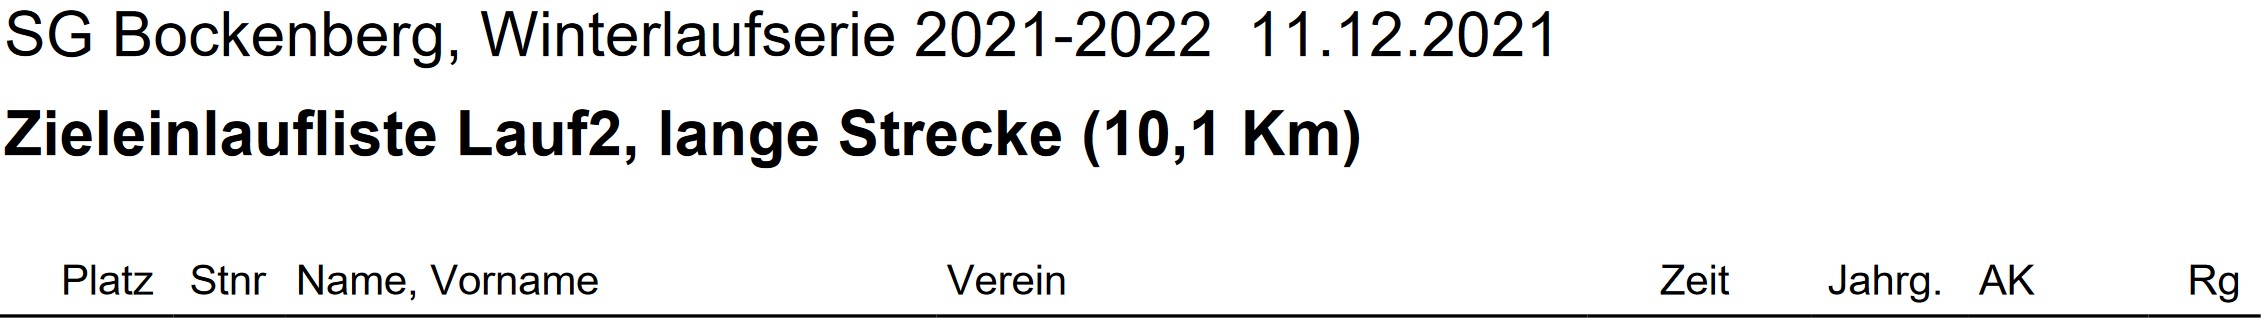 Bockenberg 2021 Lauf2 Ergebnis Teil1